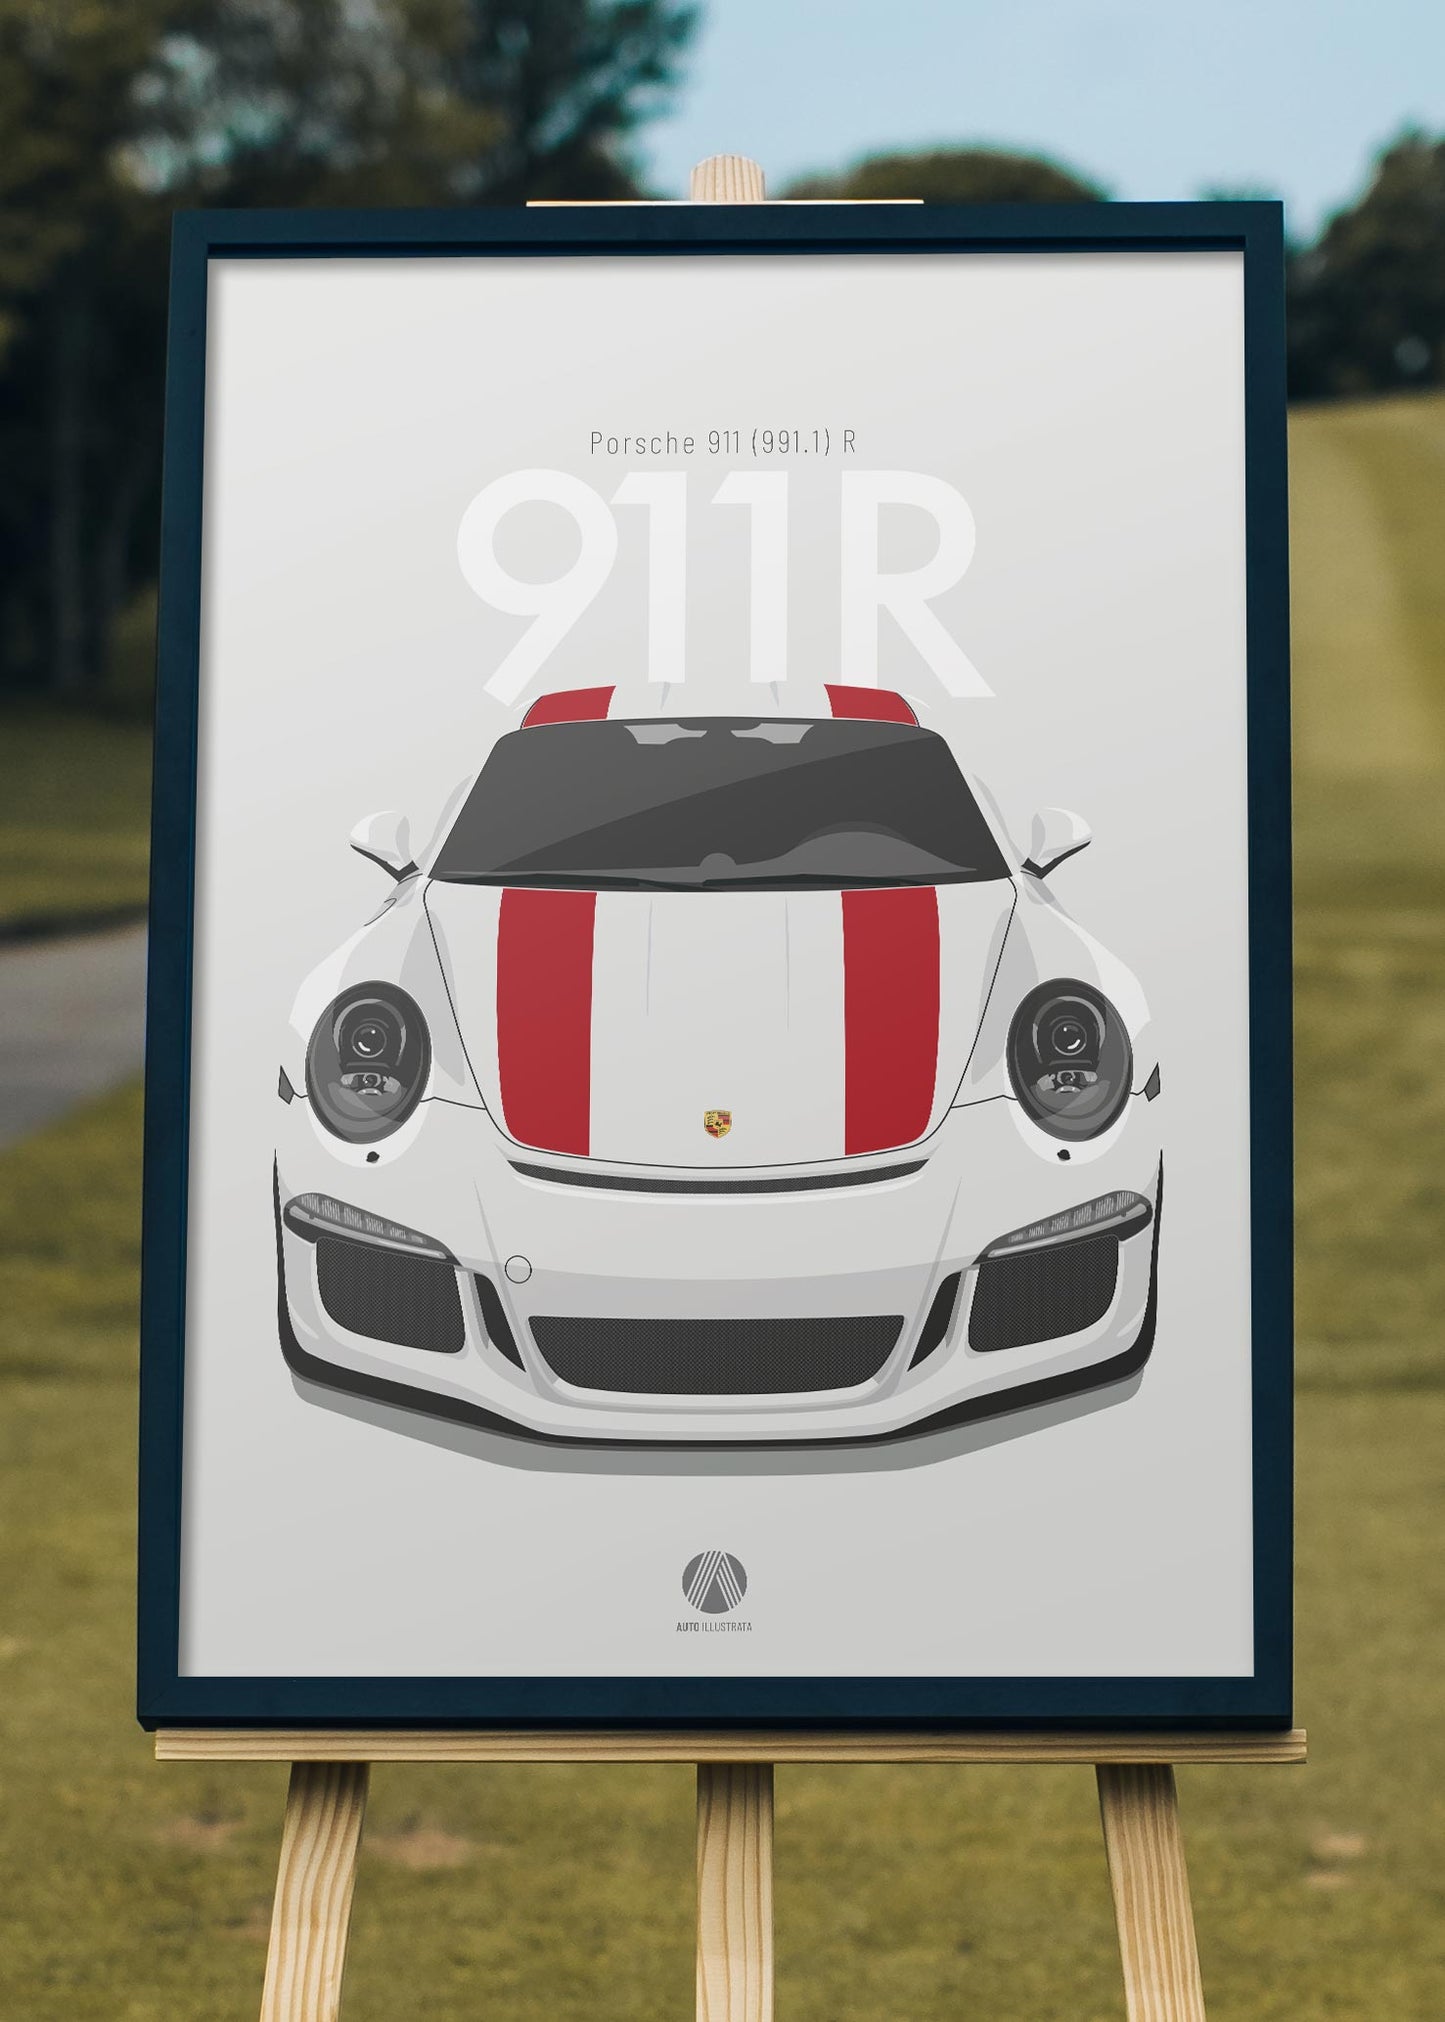 2016 Porsche 911 (991.1) R Carrara White - poster print